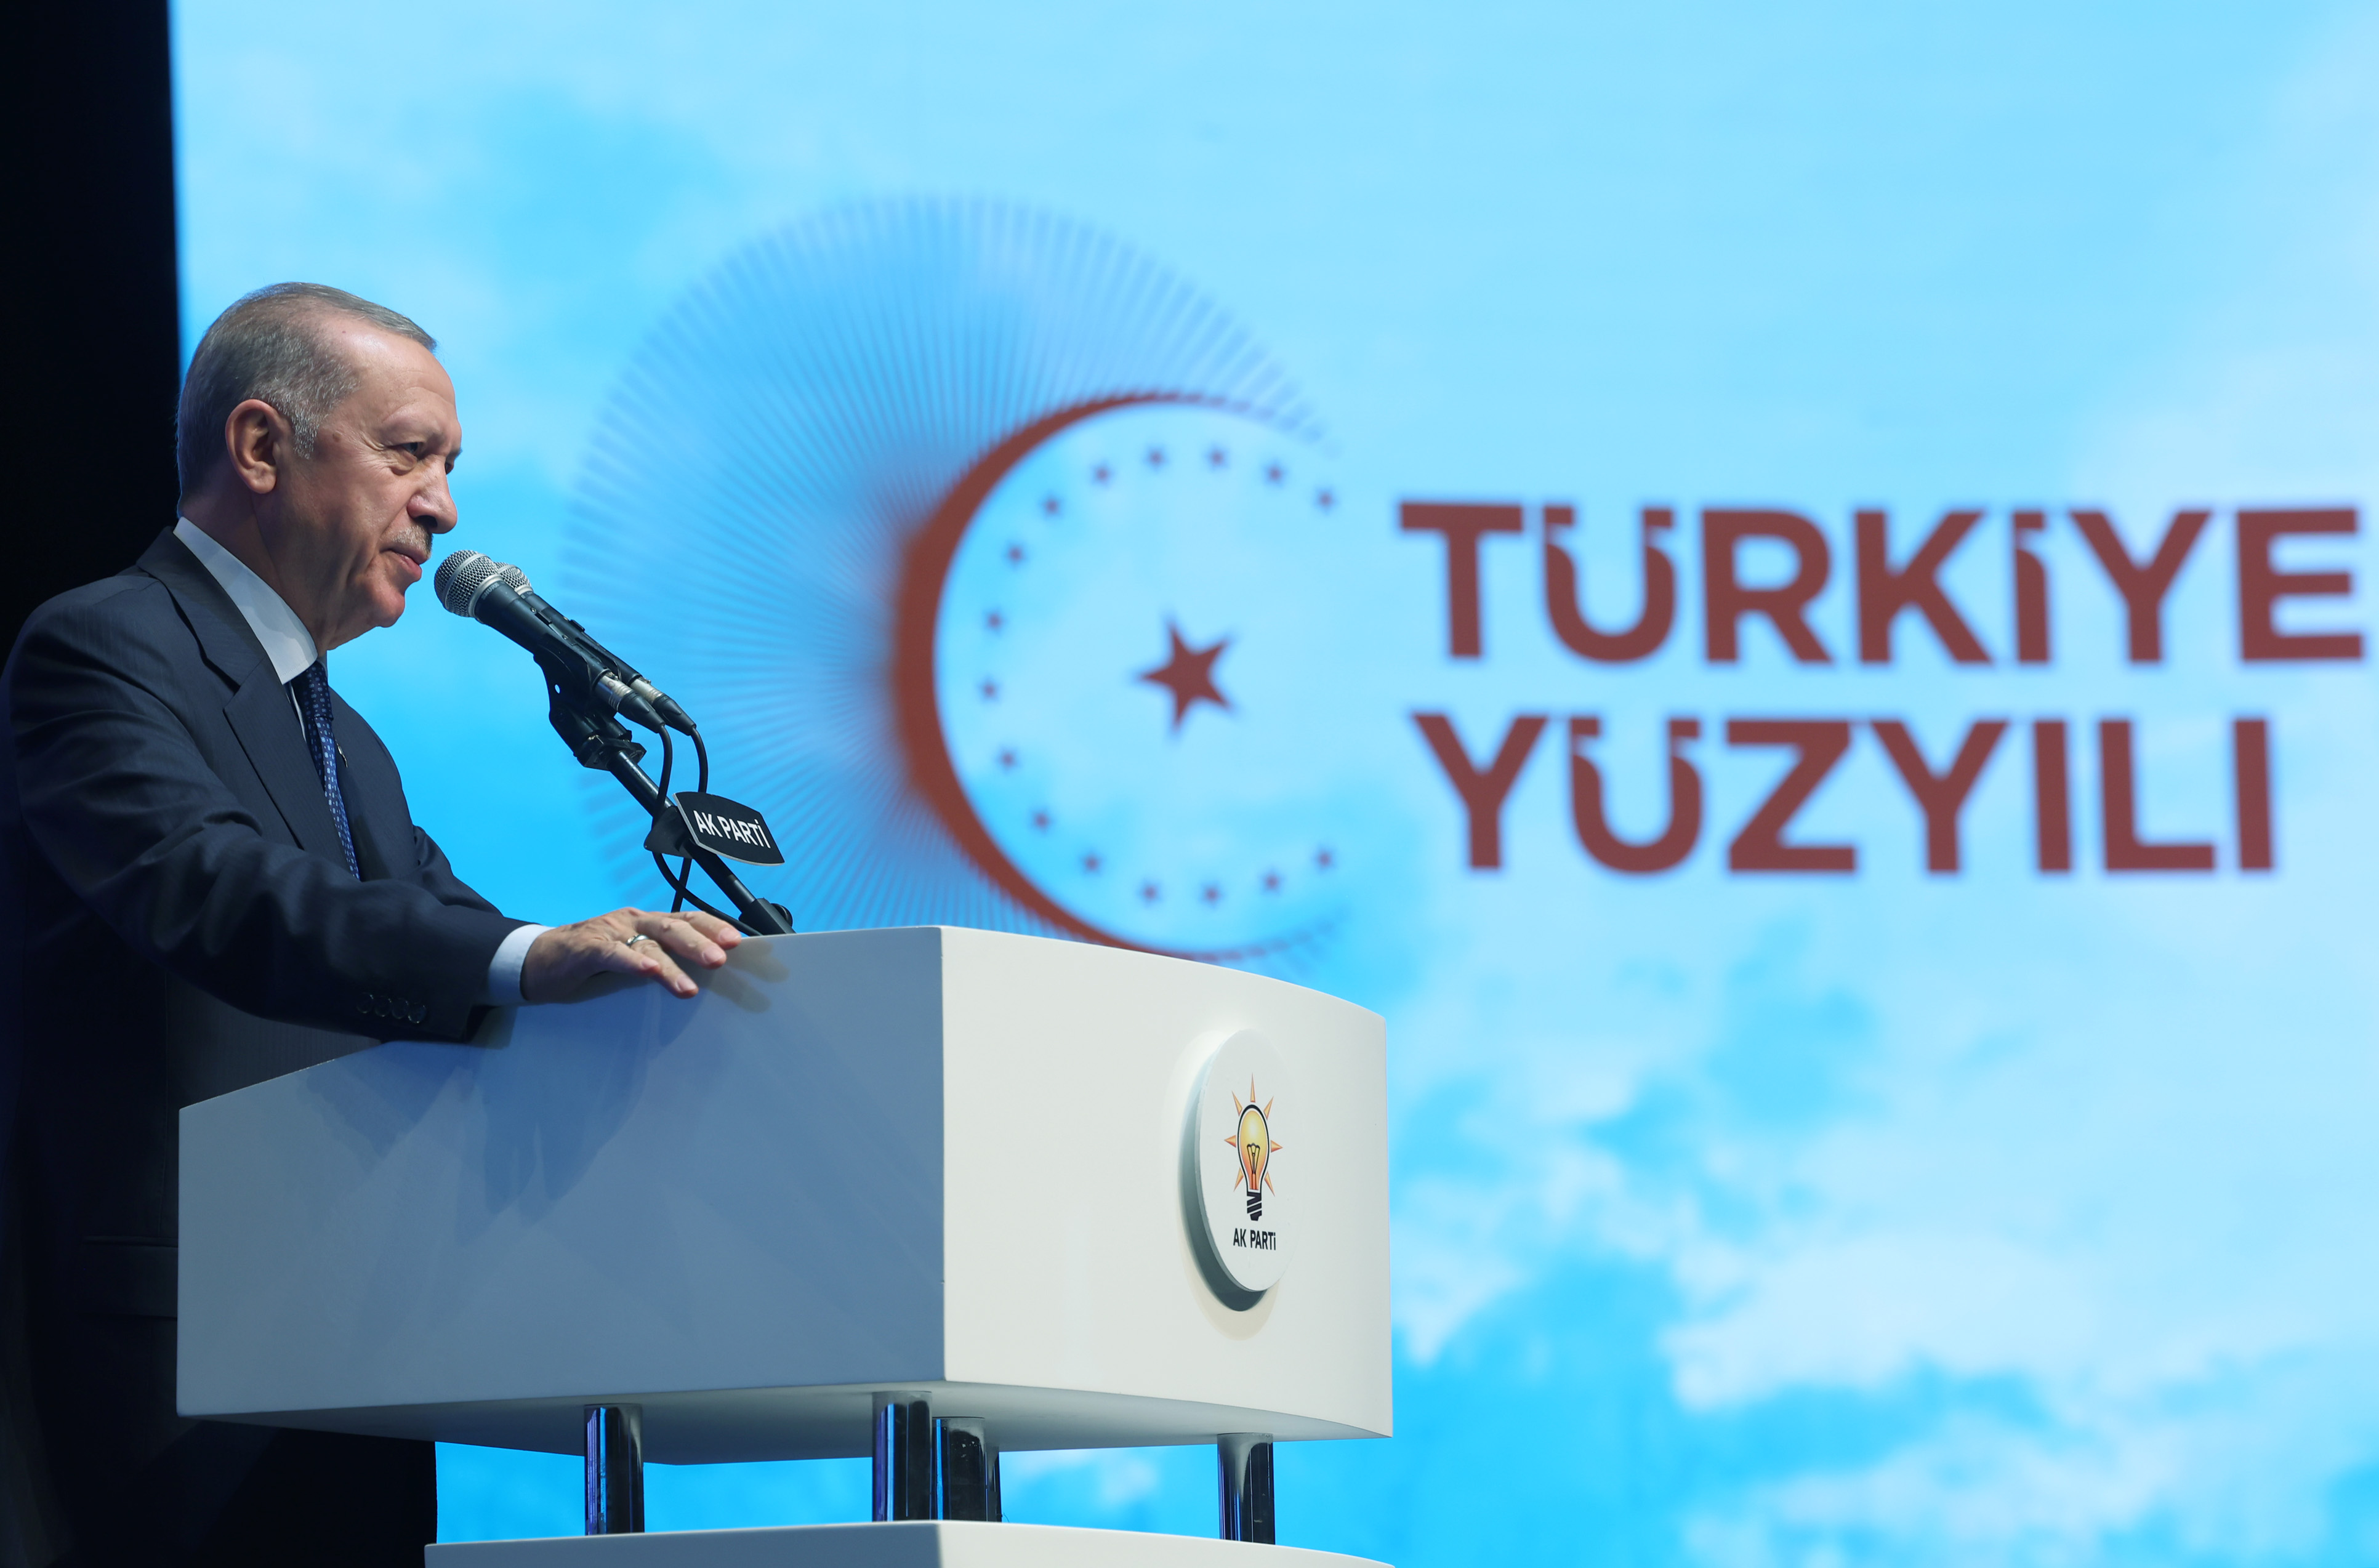 Cumhurbaşkanı Erdoğan: AK Parti, yasakların karabasan gibi çöktüğü Türkiye'ye umudun adı olmuştur